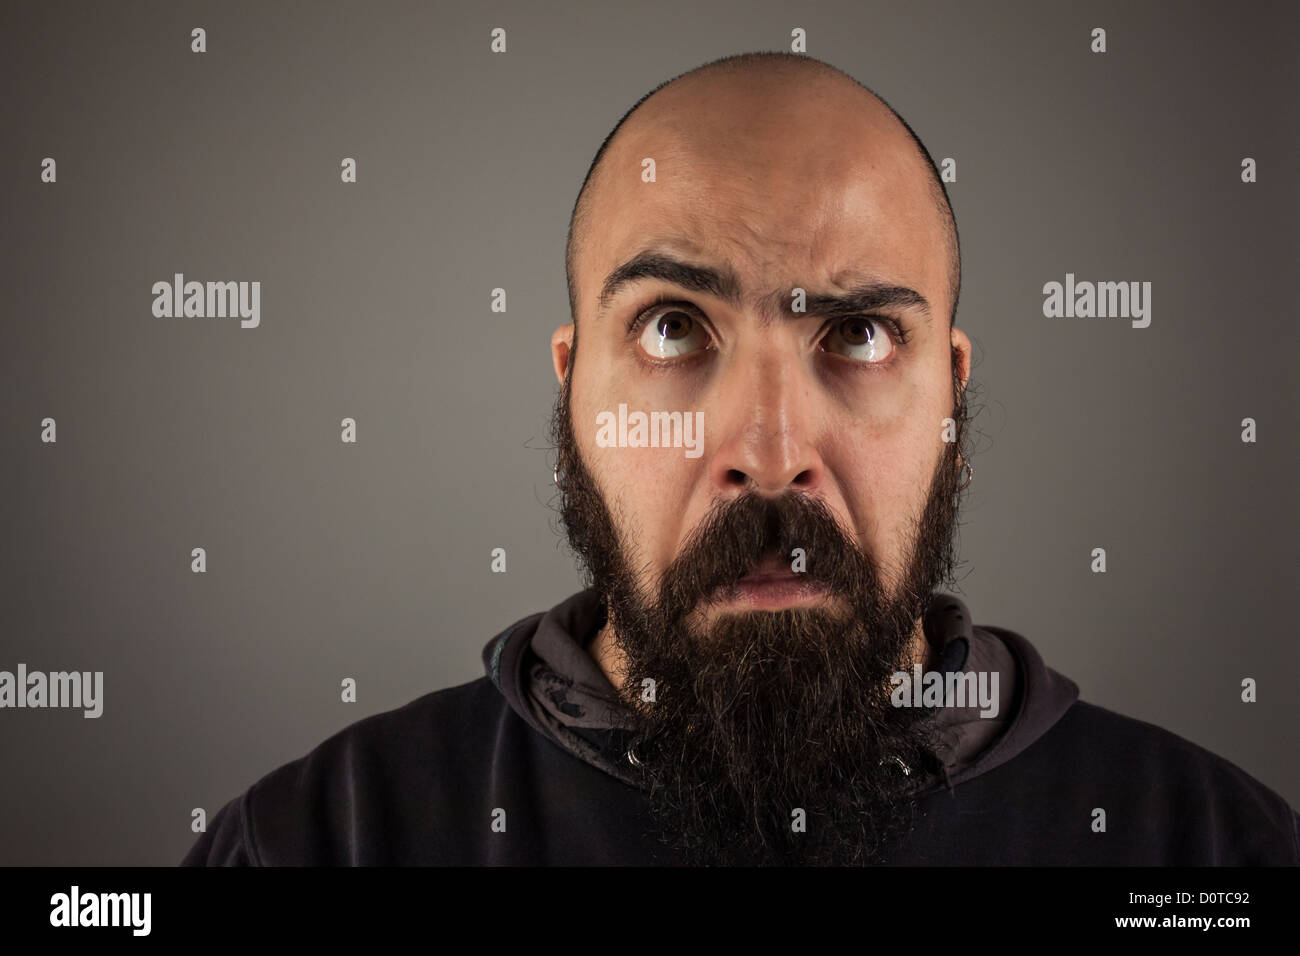 Bearded man doubtfully thinking Stock Photo